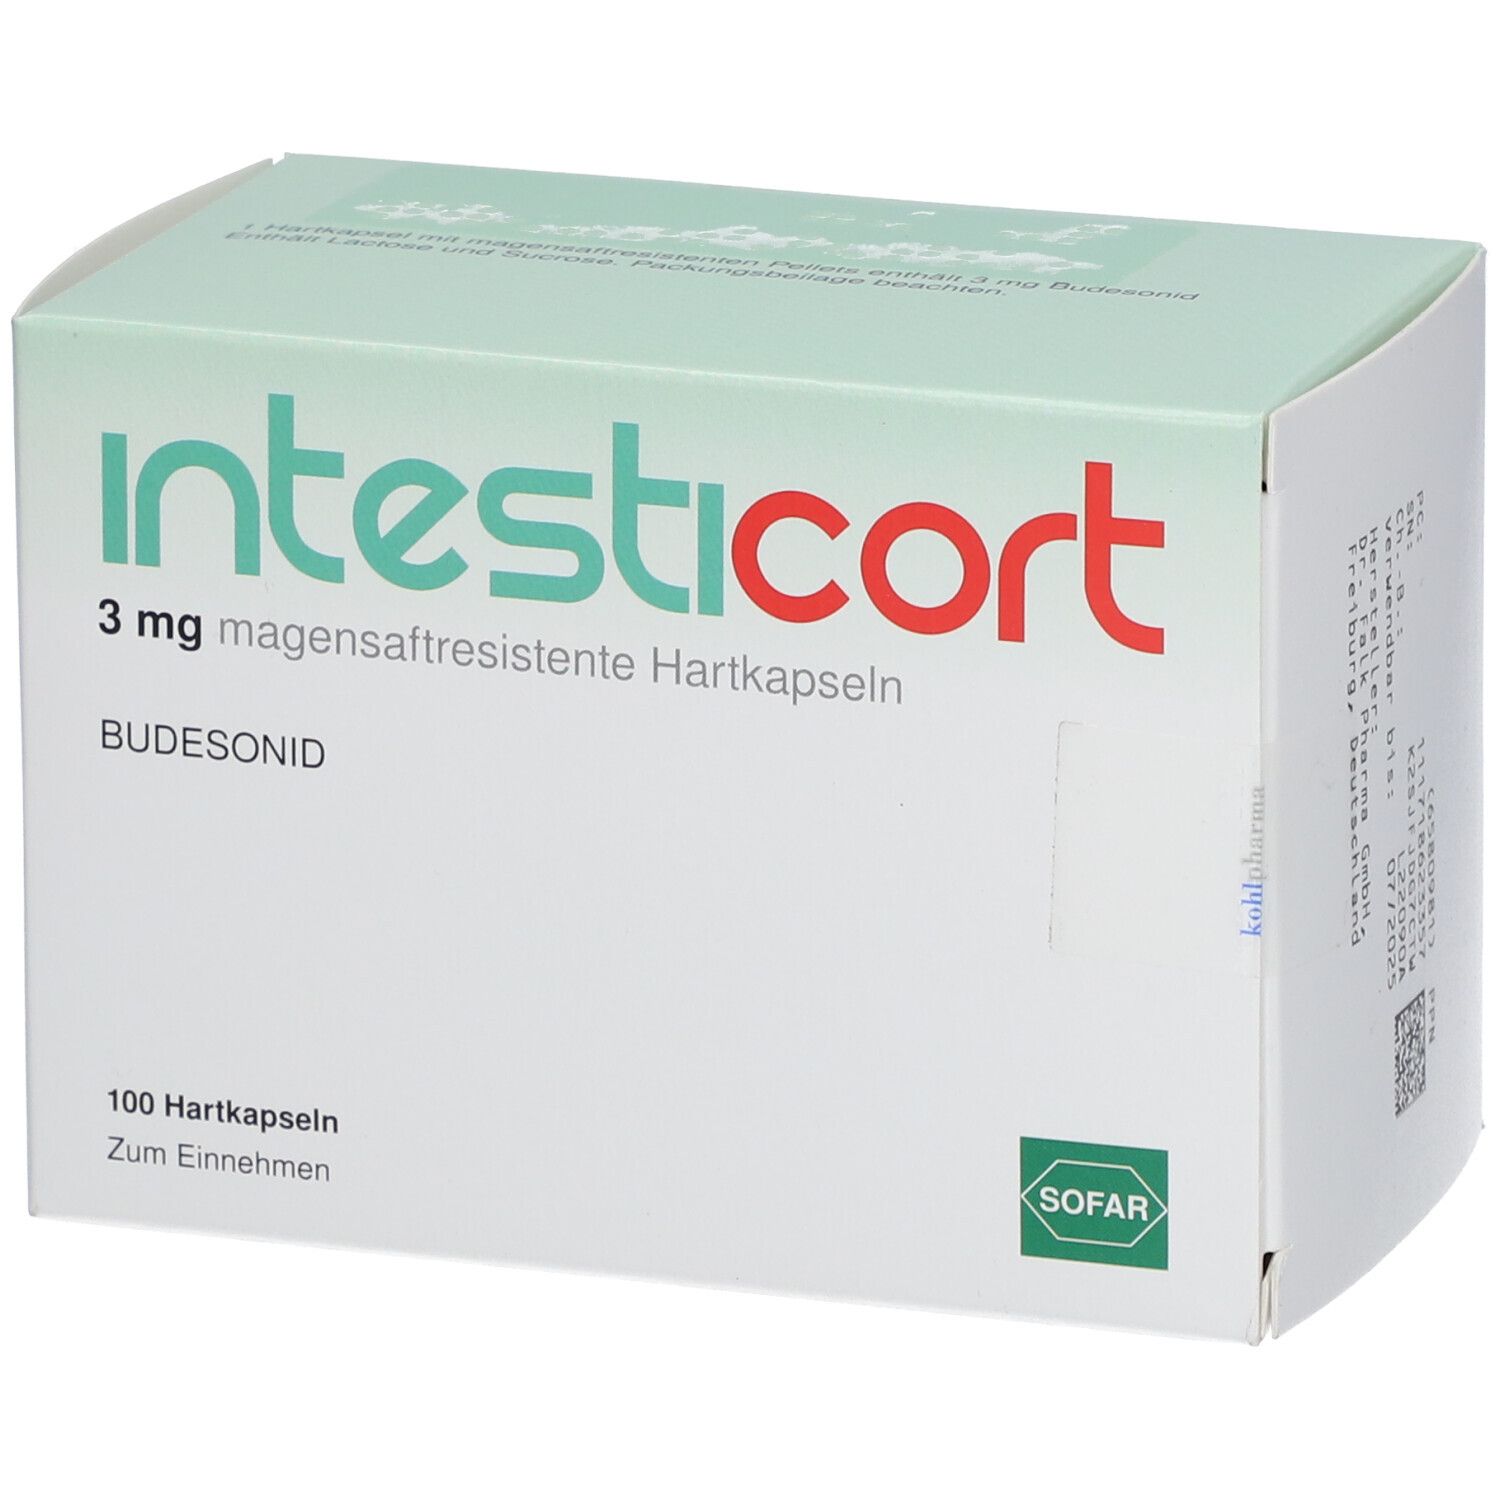 Intesticort 3 mg